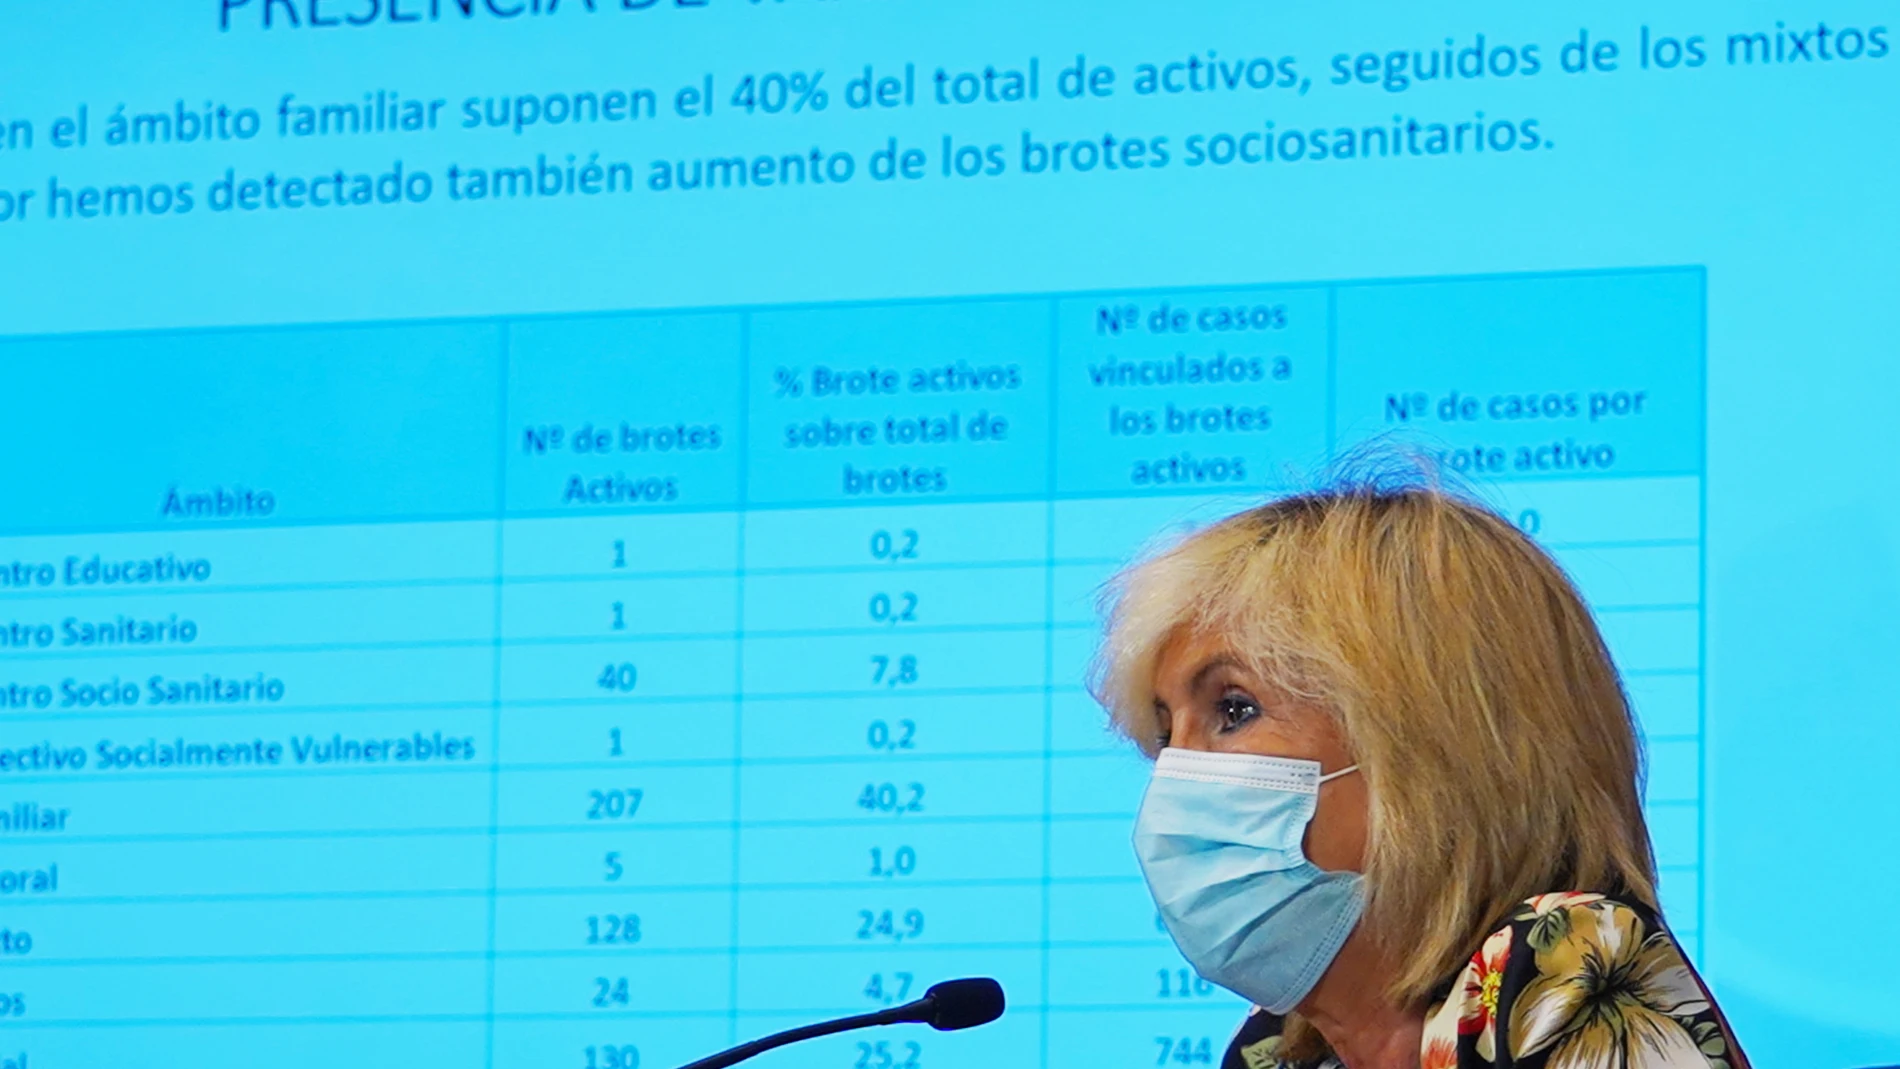 La consejera de Sanidad, Verónica Casado, informa sobre la situació epidemiológica en Castilla y León